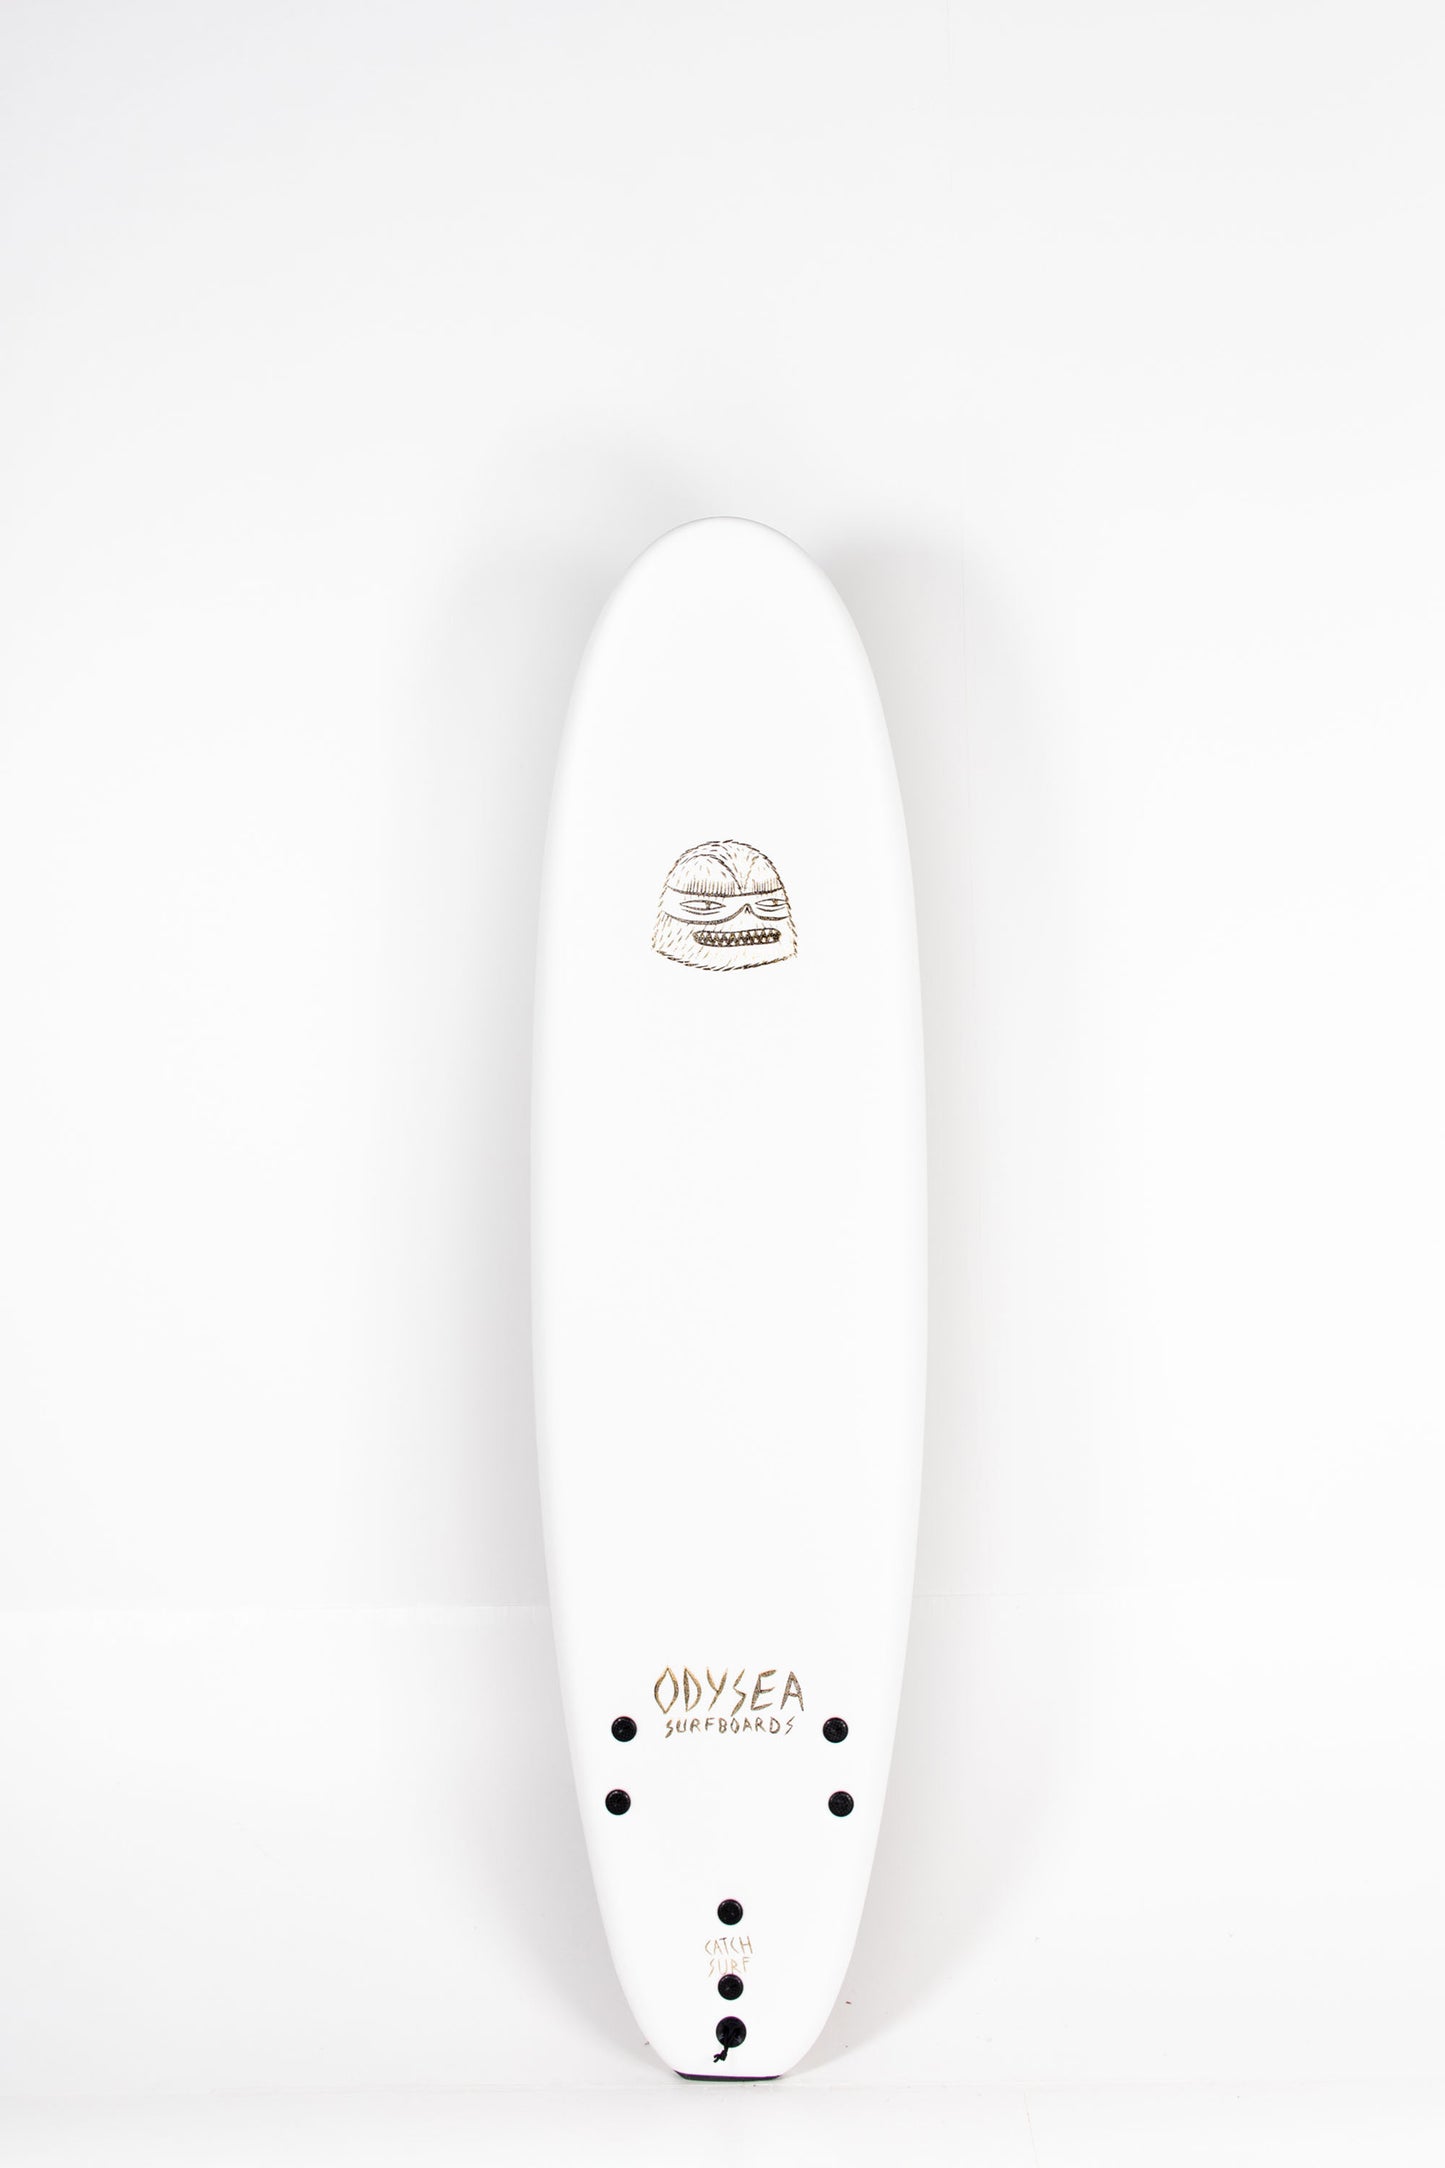 Pukas Surf Shop - Catch Surf - LOG x EVAN ROSSELL PRO - 7'0" x 22" x 3,125" x 72L.